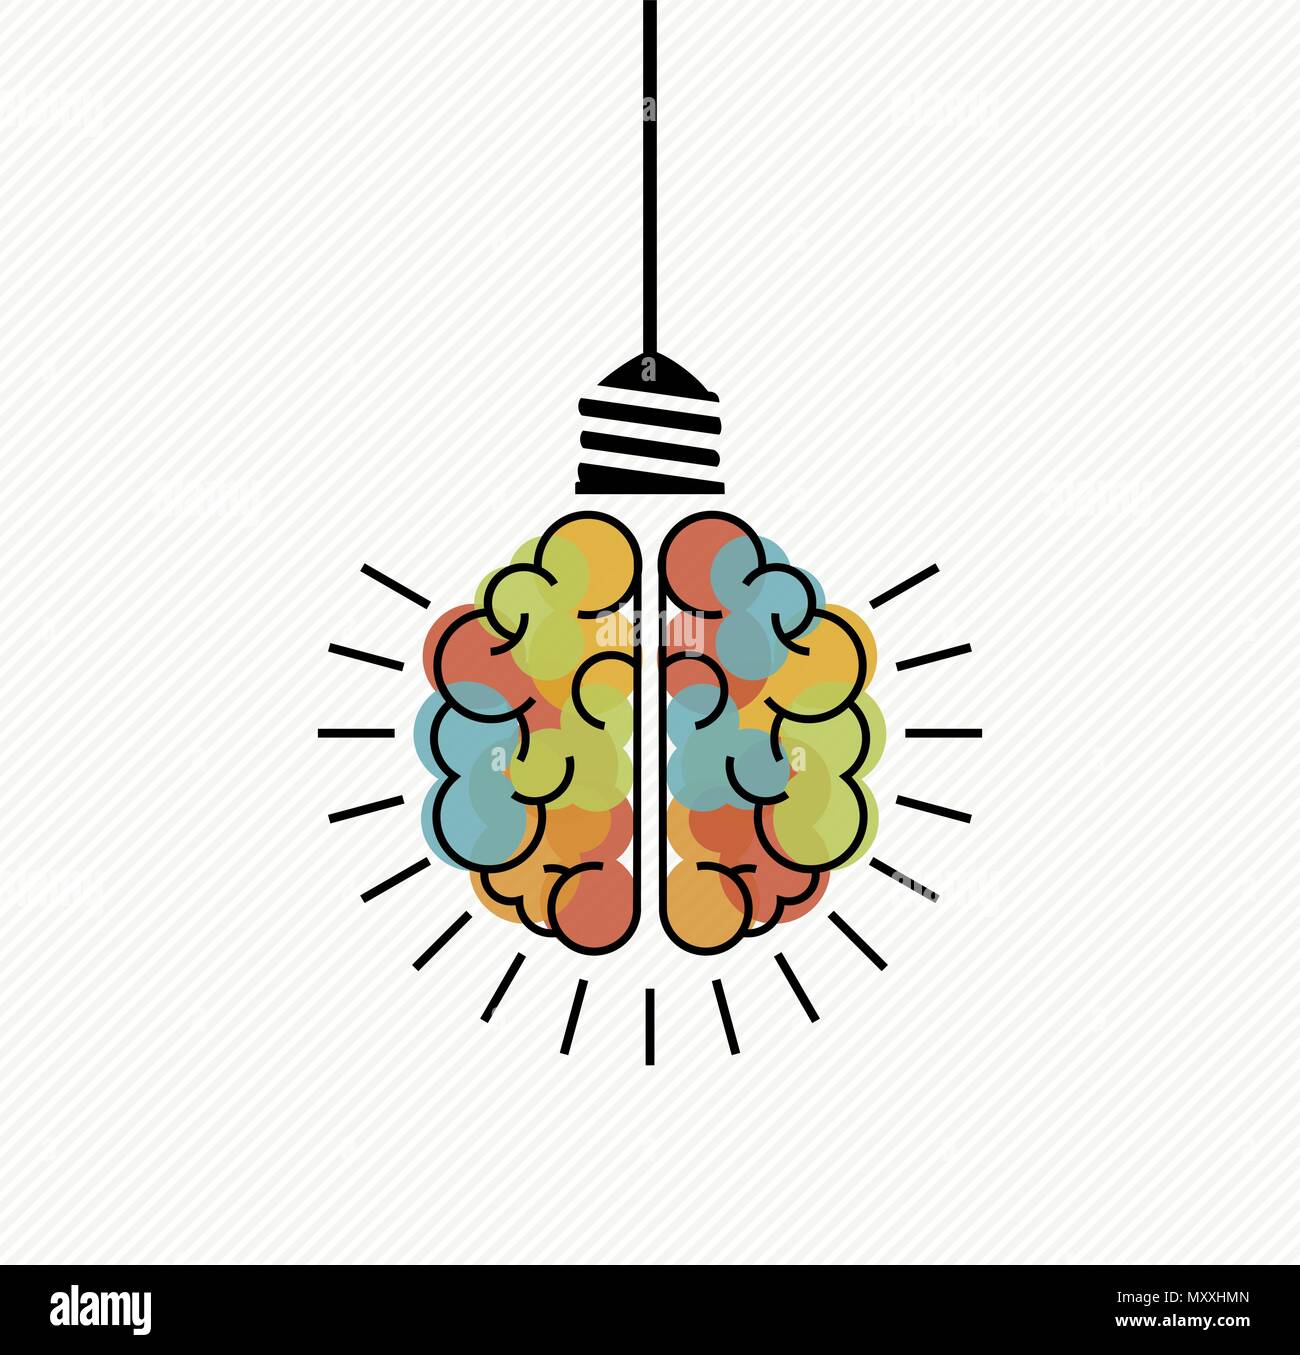 Kreatives Denken Konzept Abbildung: Bunte menschliche Gehirn als elektrische Glühbirne für business solutions, Brainstorming. EPS 10 Vektor. Stock Vektor